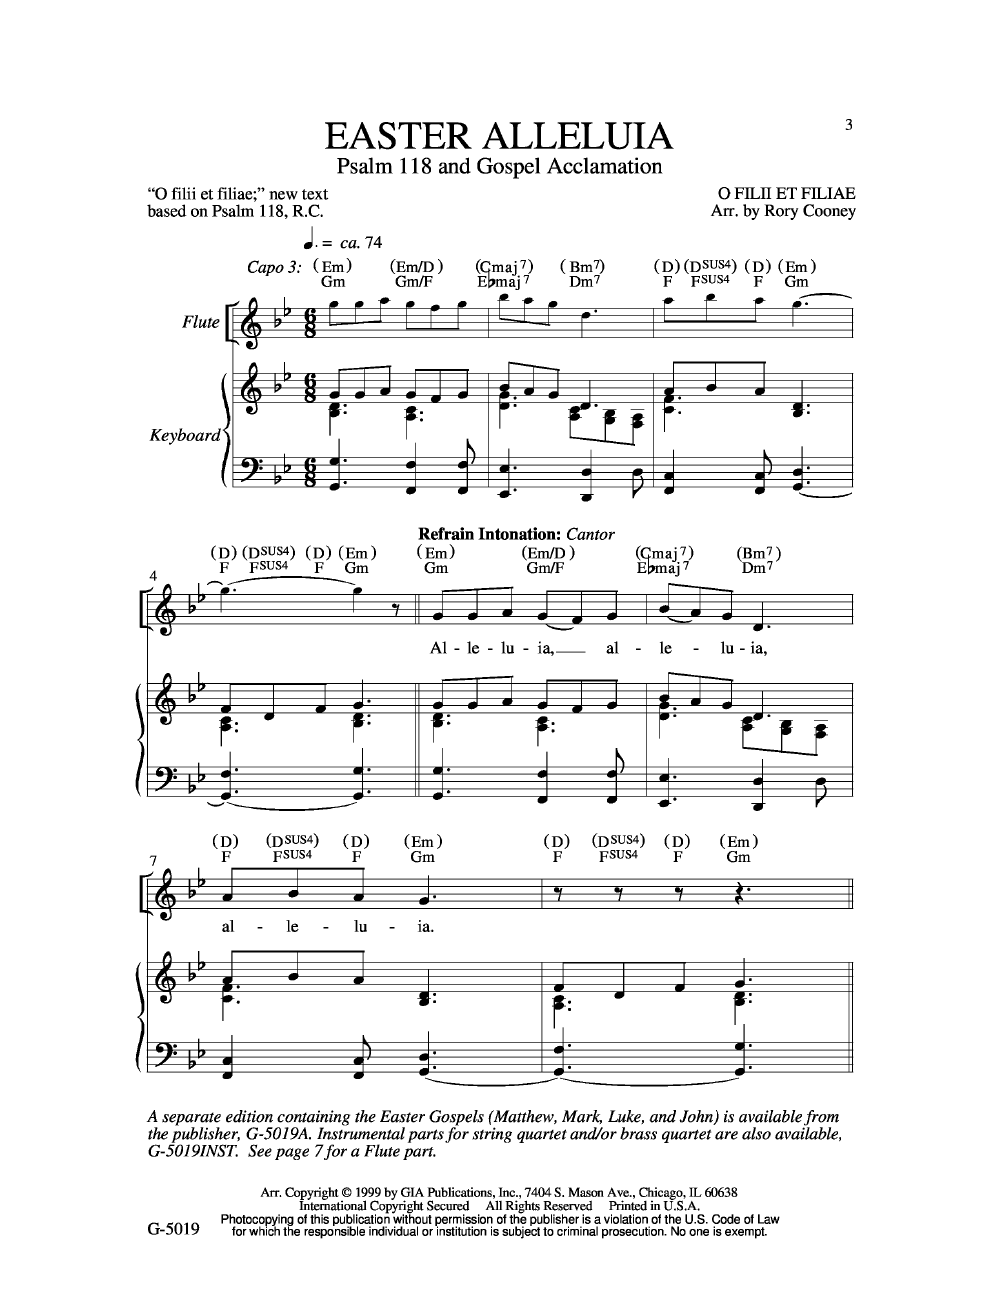 Hallelujah Easter Version Instrumental : Hallelujah easter version by